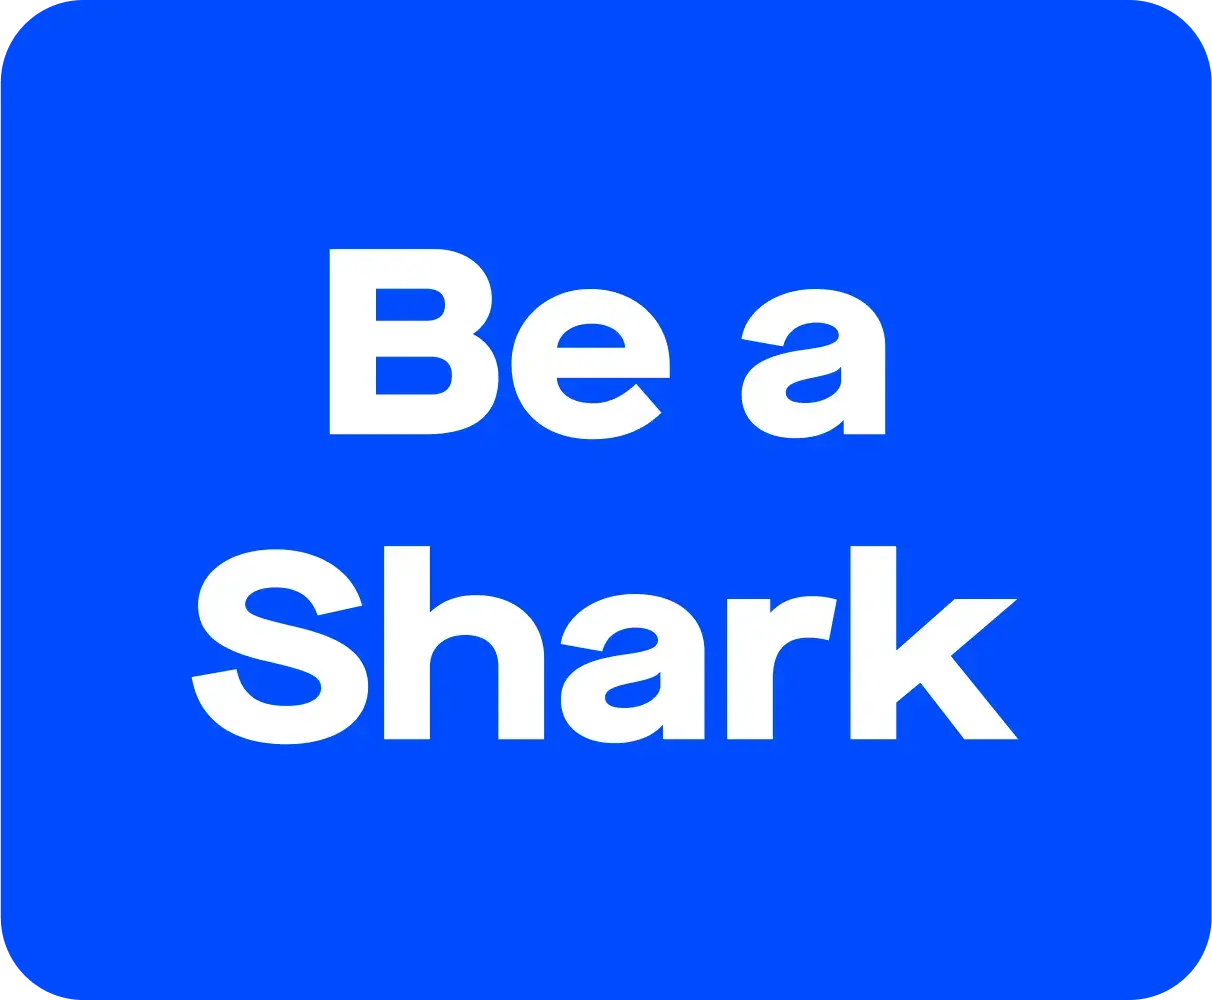 Be a shark - 2